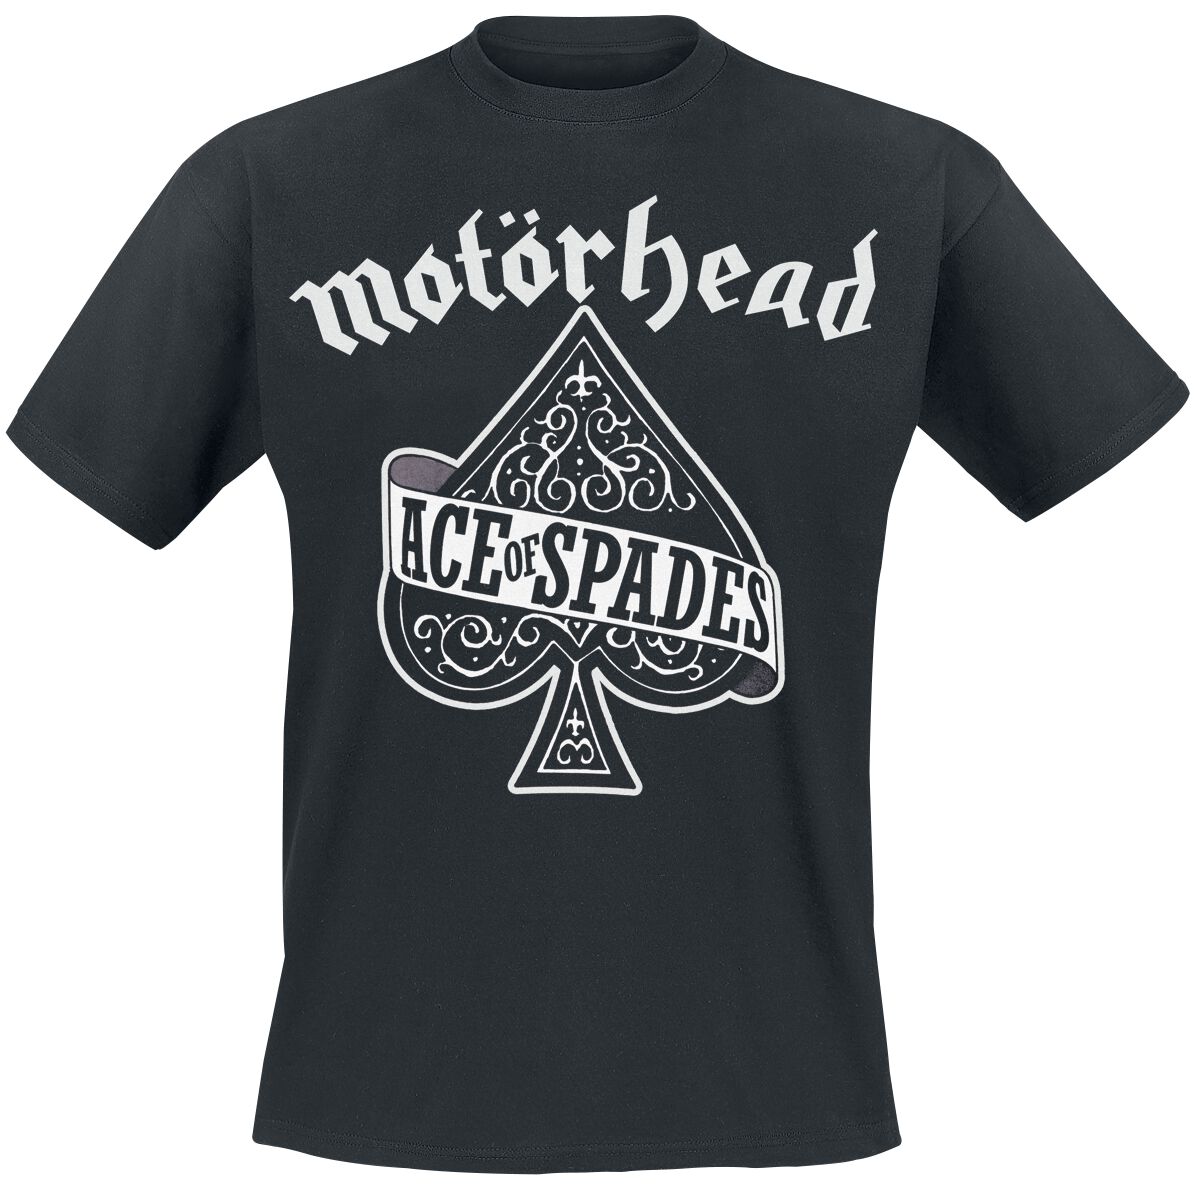 Motörhead T-Shirt - Ace Of Spades - XS bis M - für Männer - Größe S - schwarz  - Lizenziertes Merchandise!